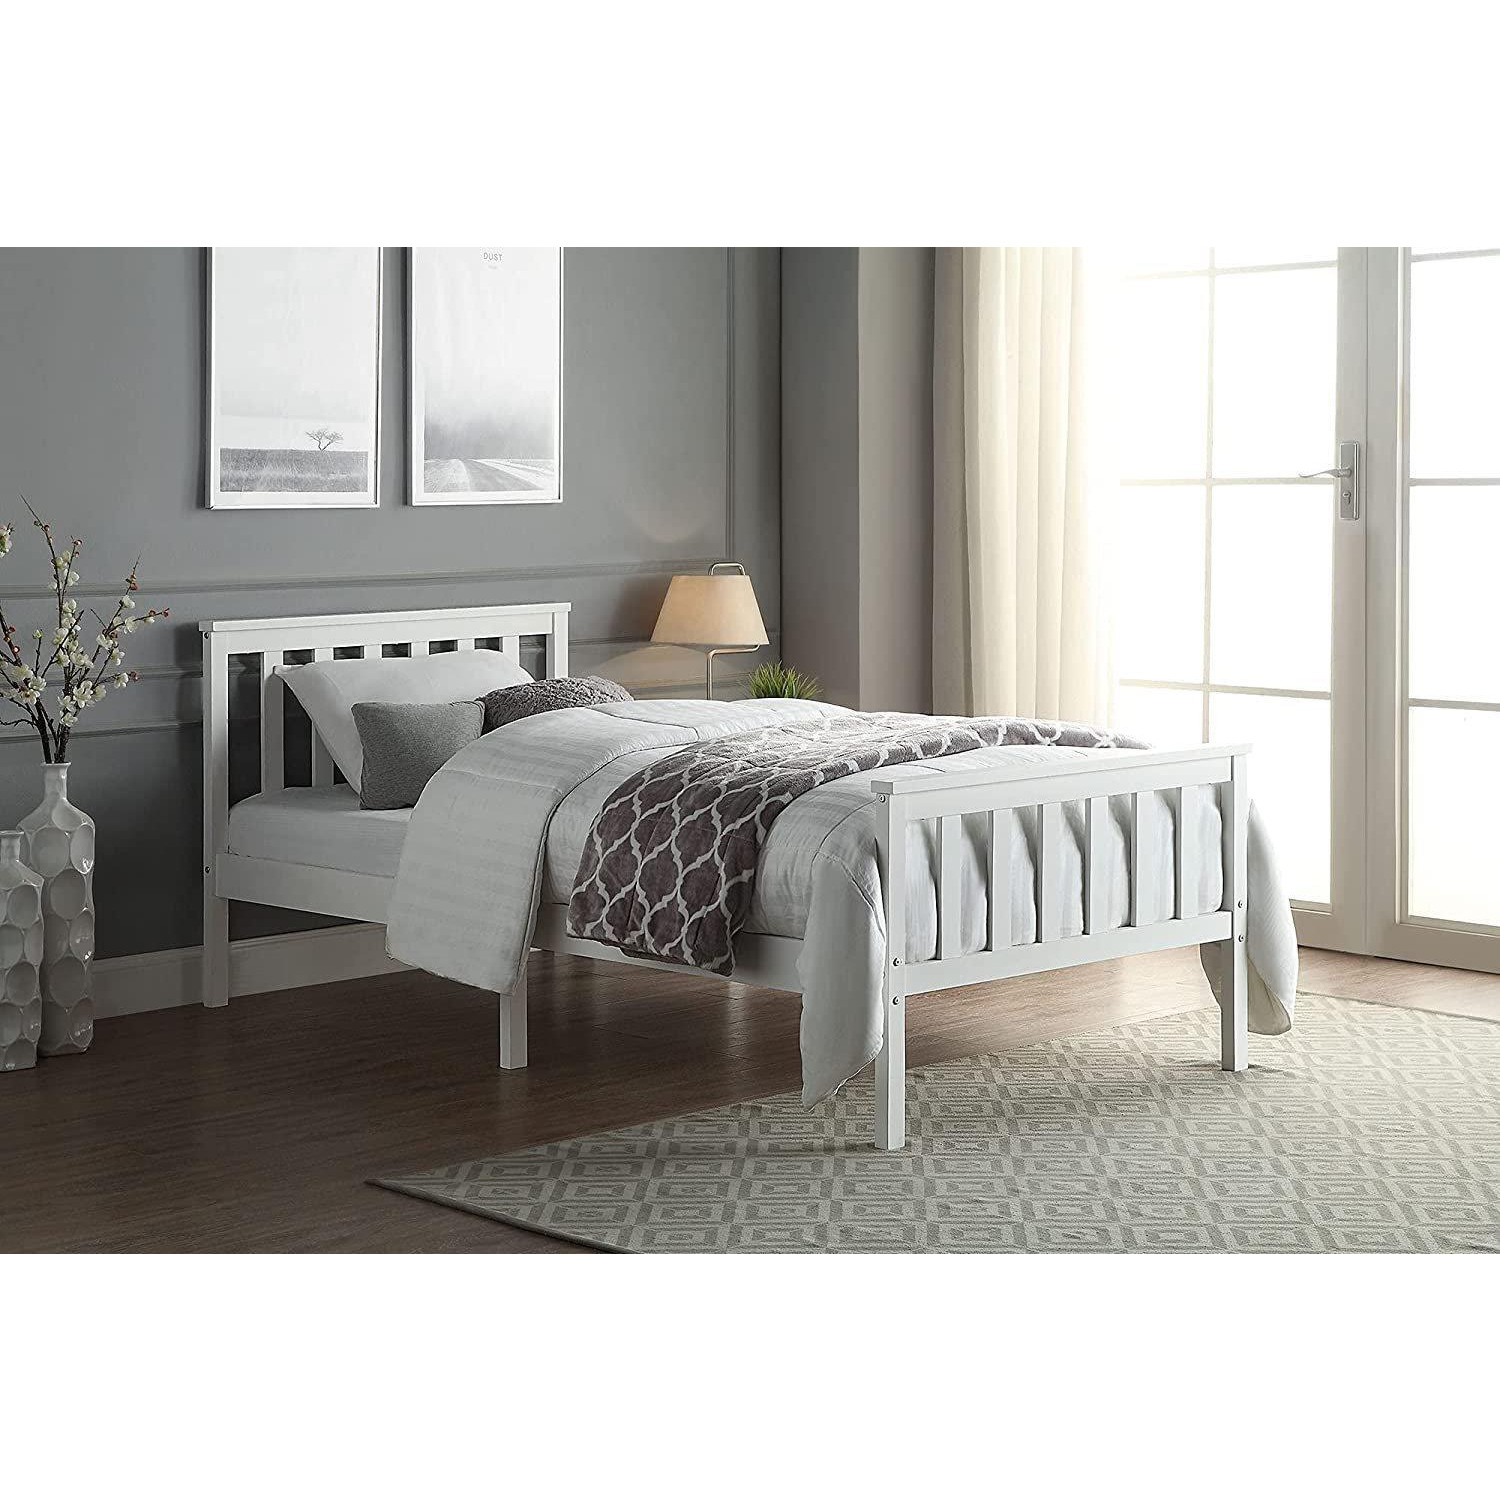 Wooden Bed Frame 3FT For Adult & Children - image 1